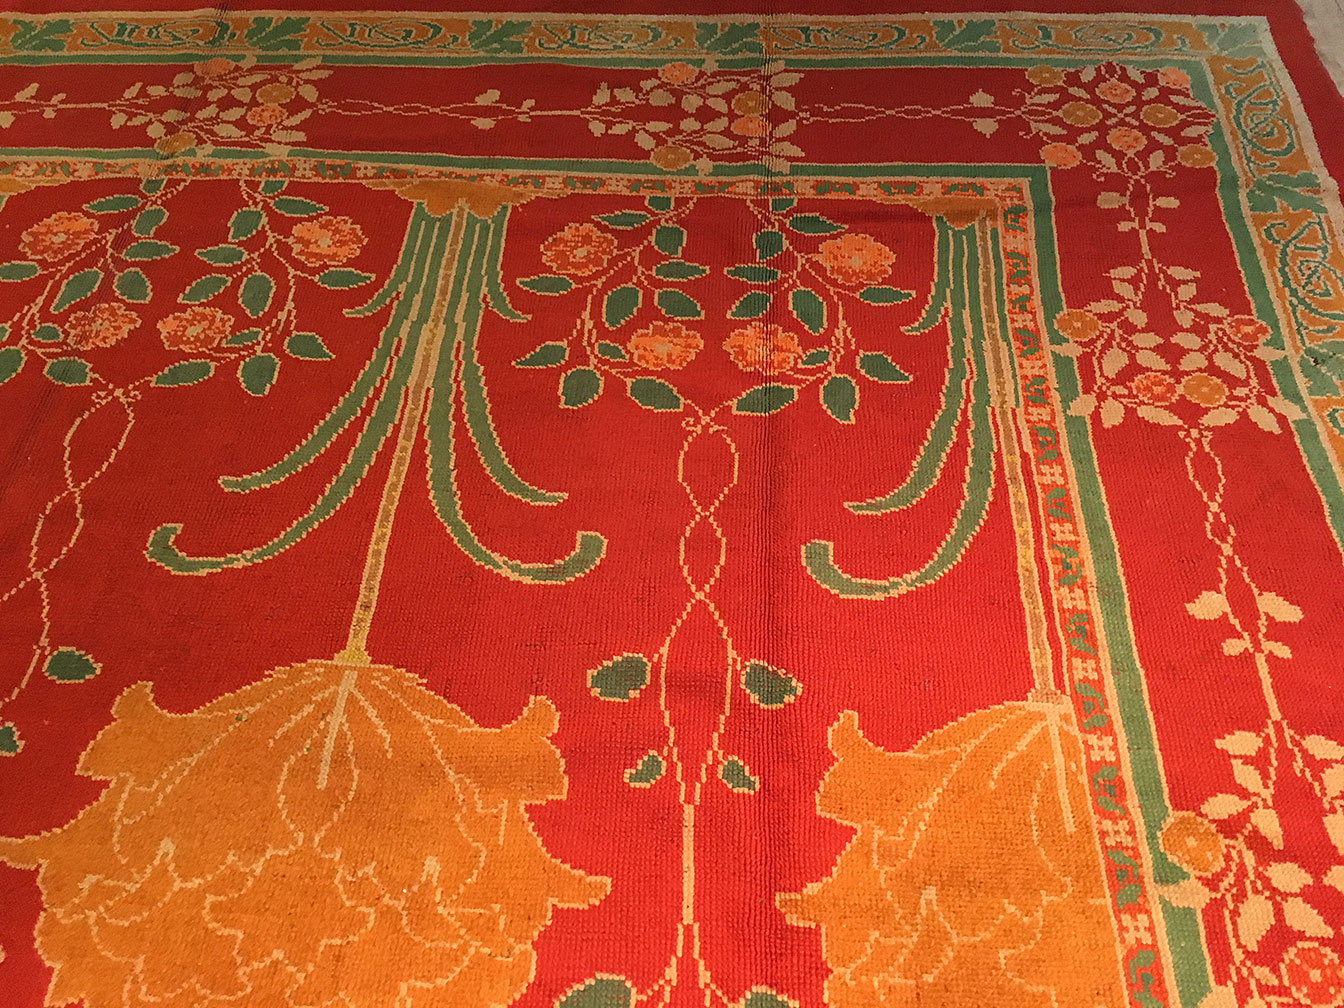 Antique donegal Carpet - # 52975